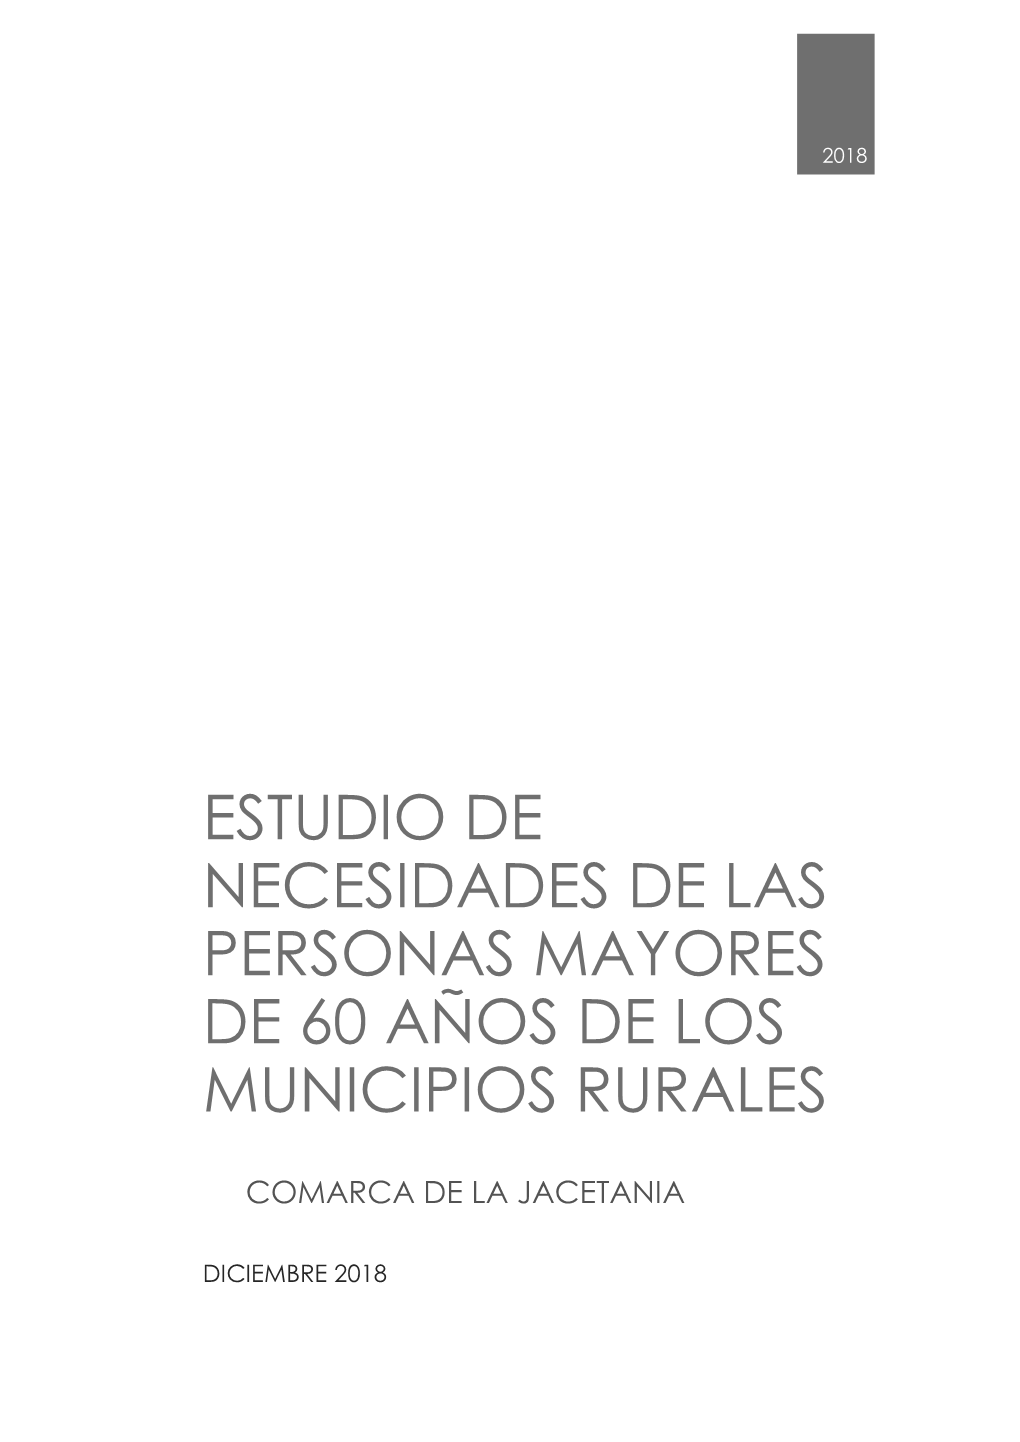 Estudio De Necesidades De Las Personas Mayores De 60 Años De Los Municipios Rurales